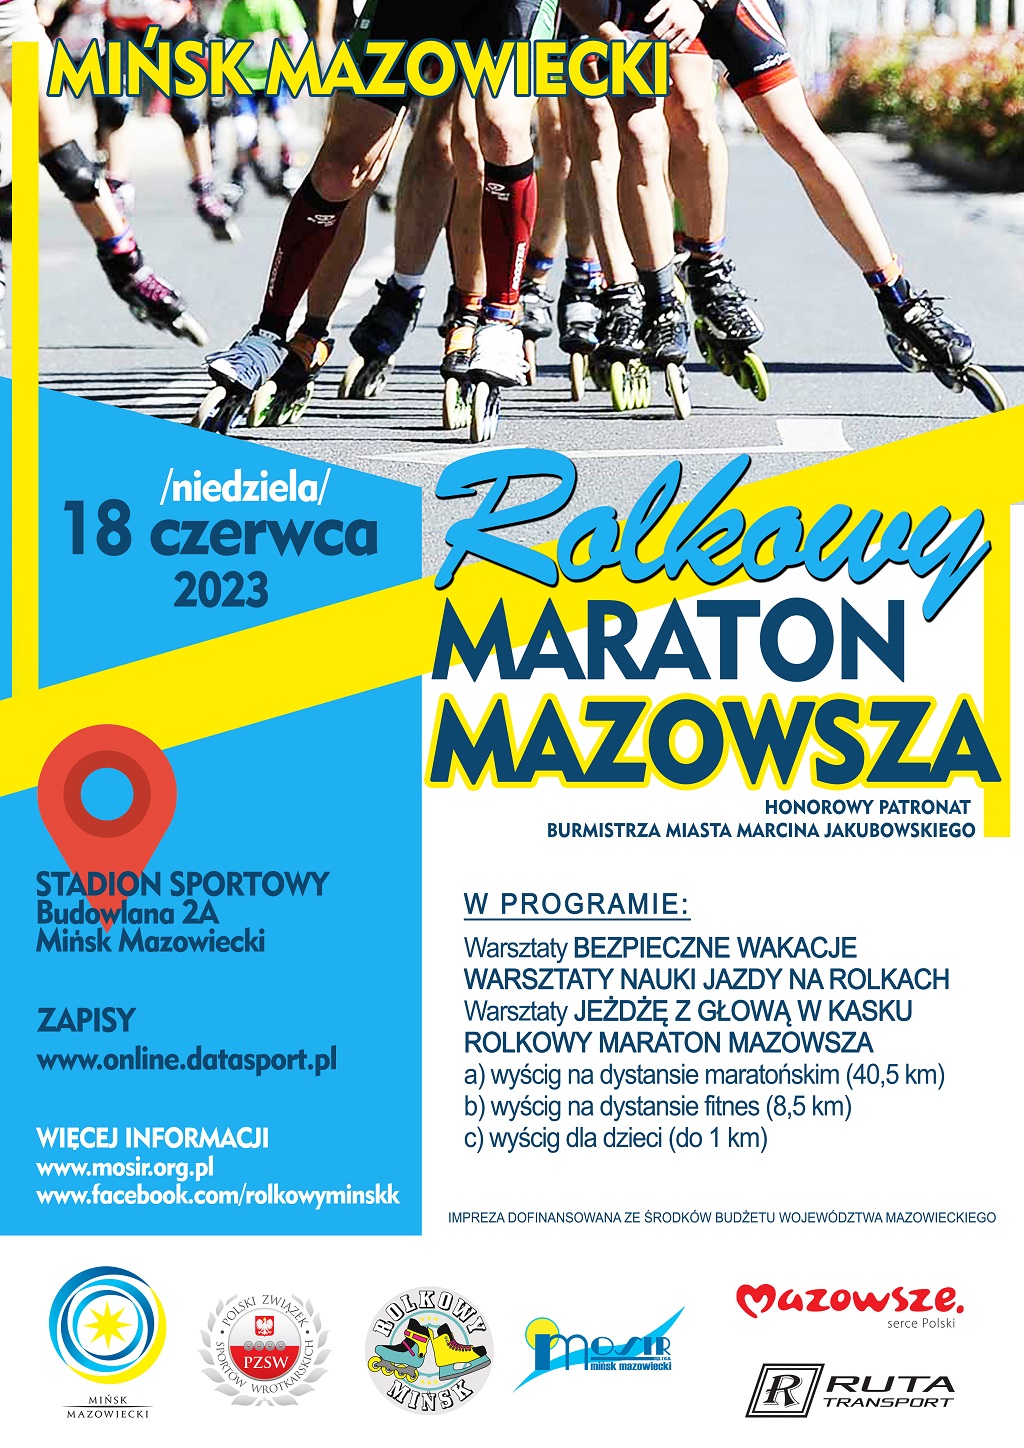 Rolkowy Maraton Mazowsza - 18.06.2023 Stadion Sportowy ul. Budowlana 2A